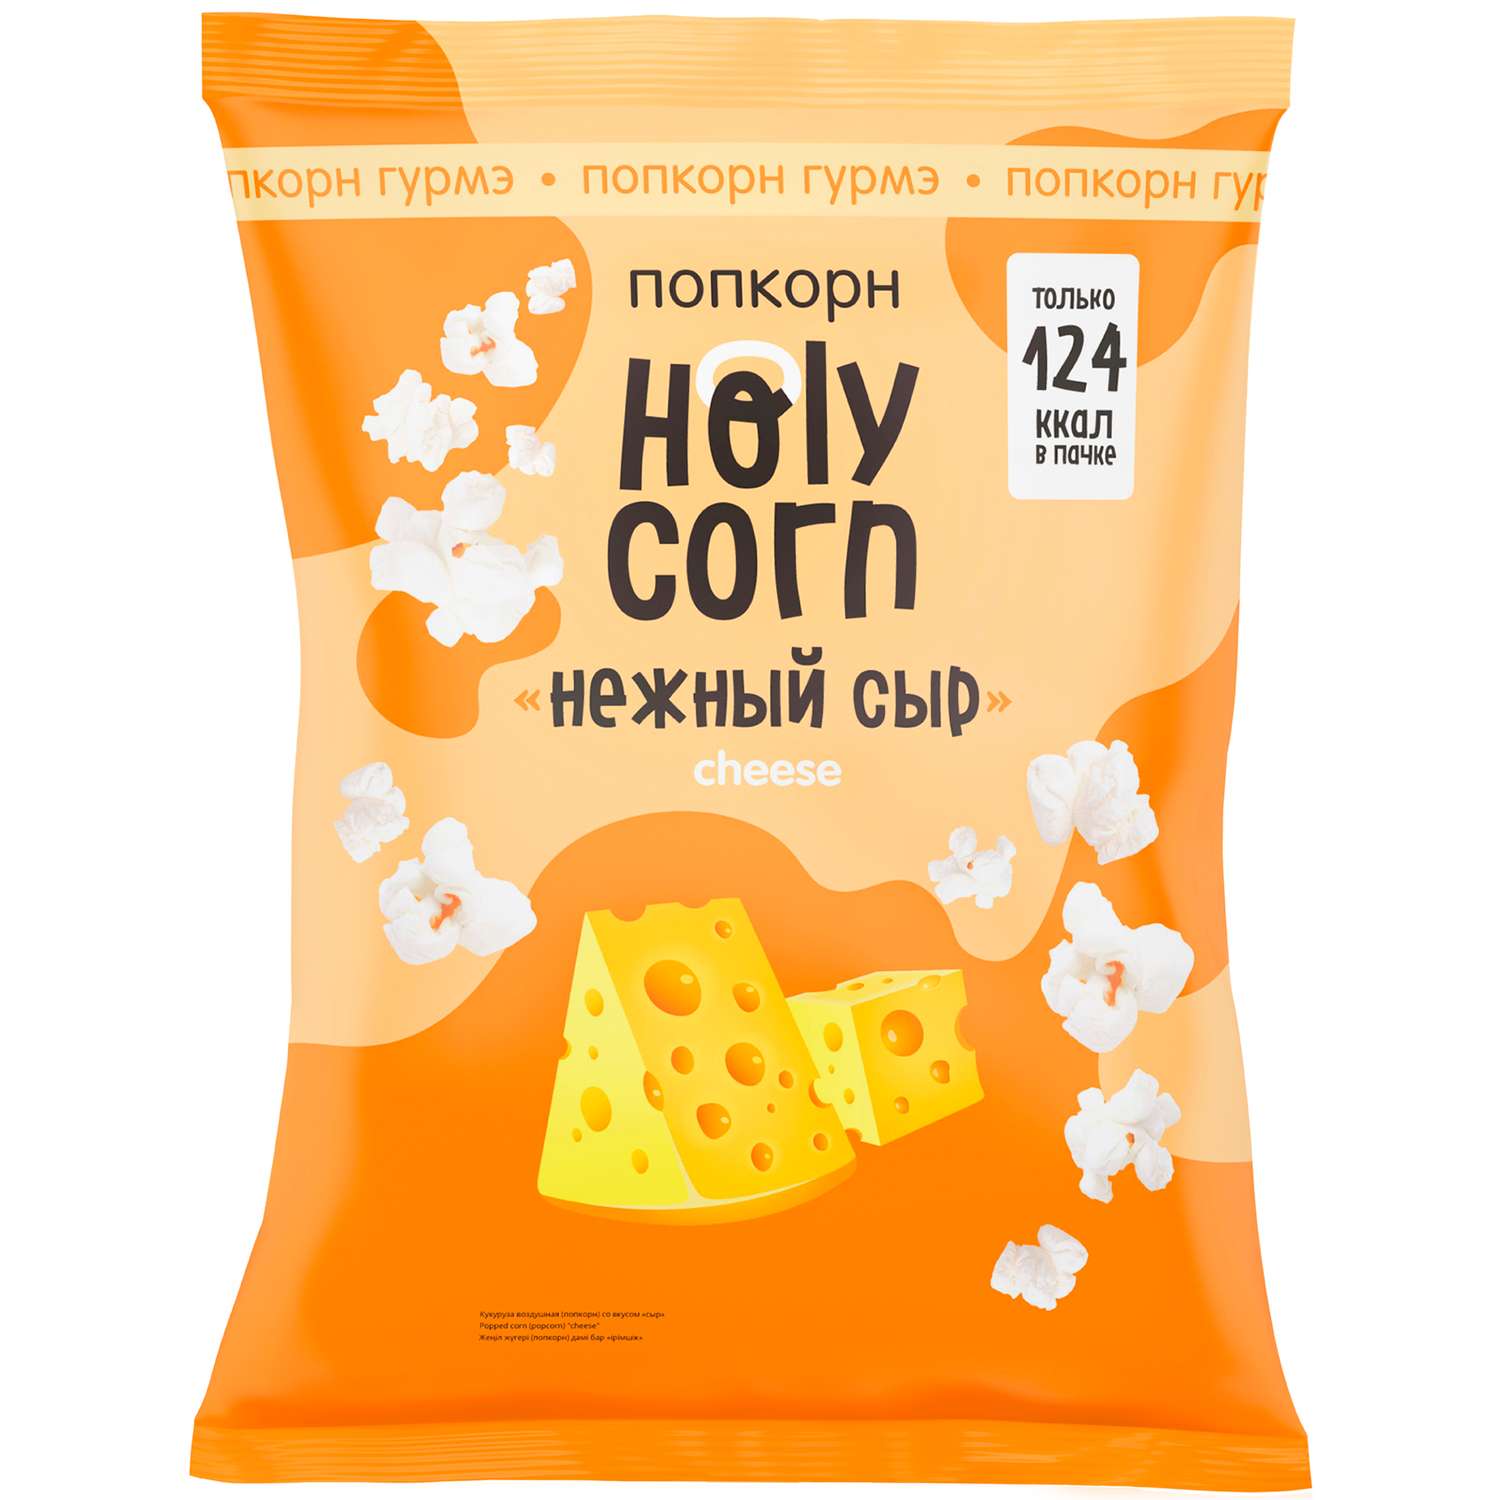 Попкорн Holy Corn нежный сыр 25г - фото 1